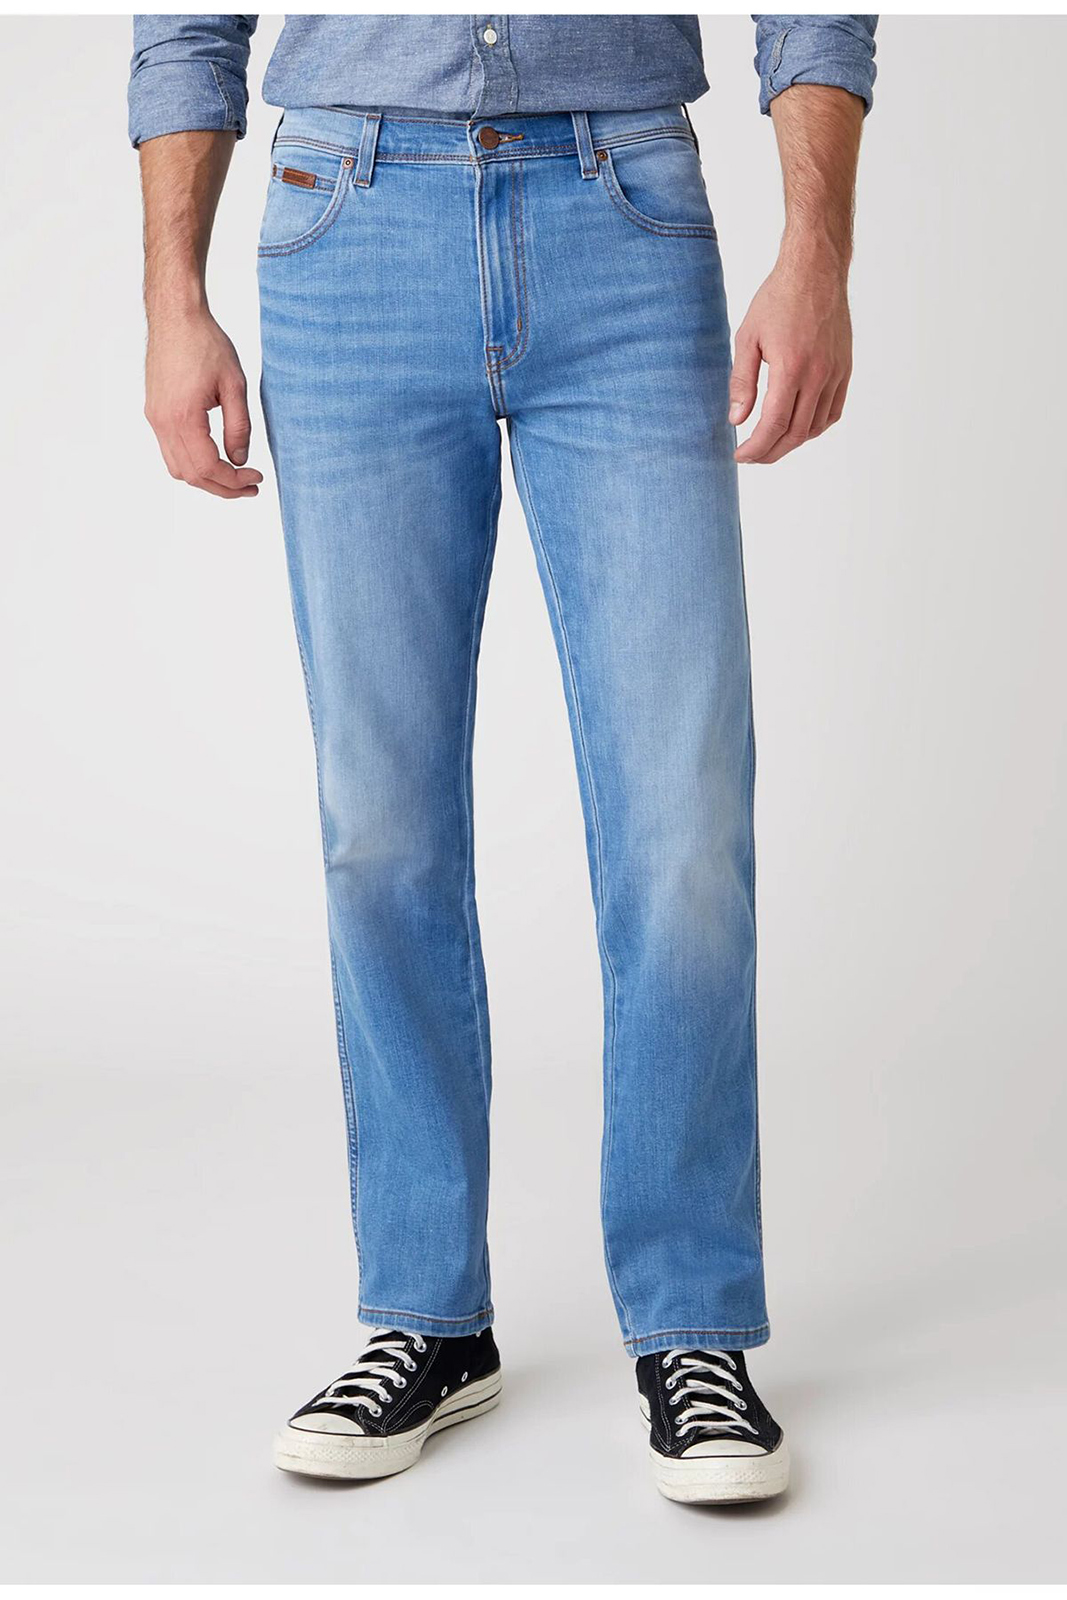 фото Джинсы мужские wrangler men texas heat rage jeans синие 34/34